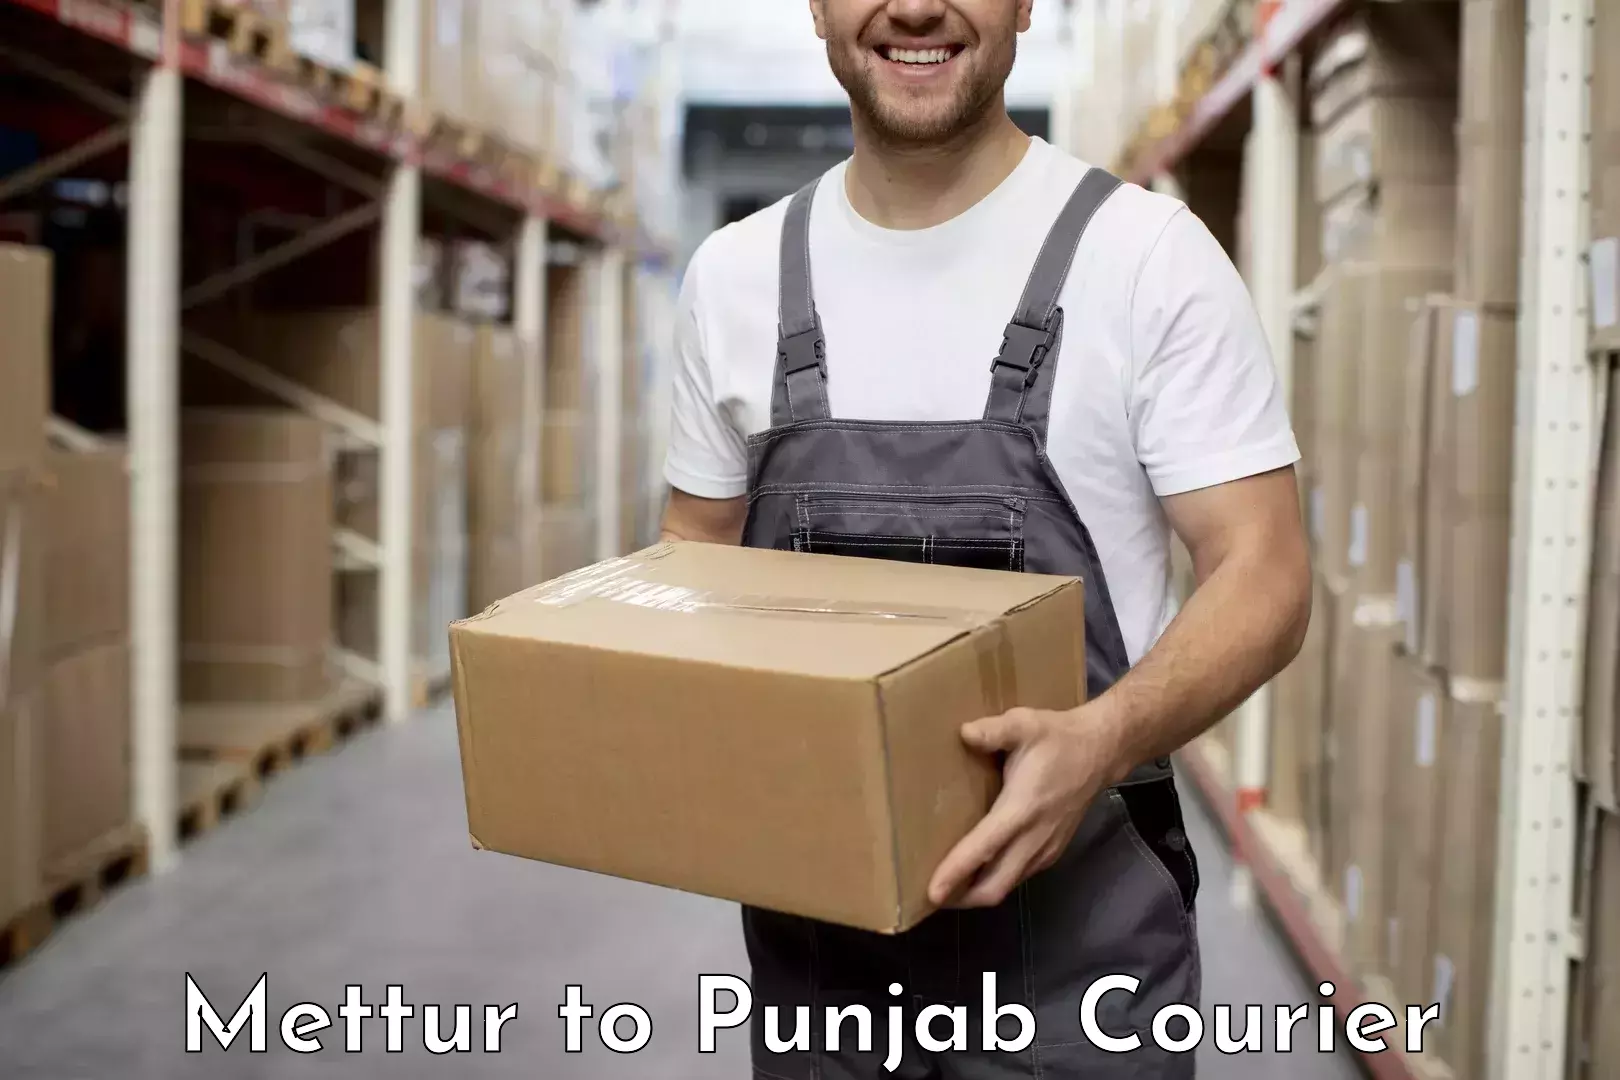 Express logistics service Mettur to Punjab